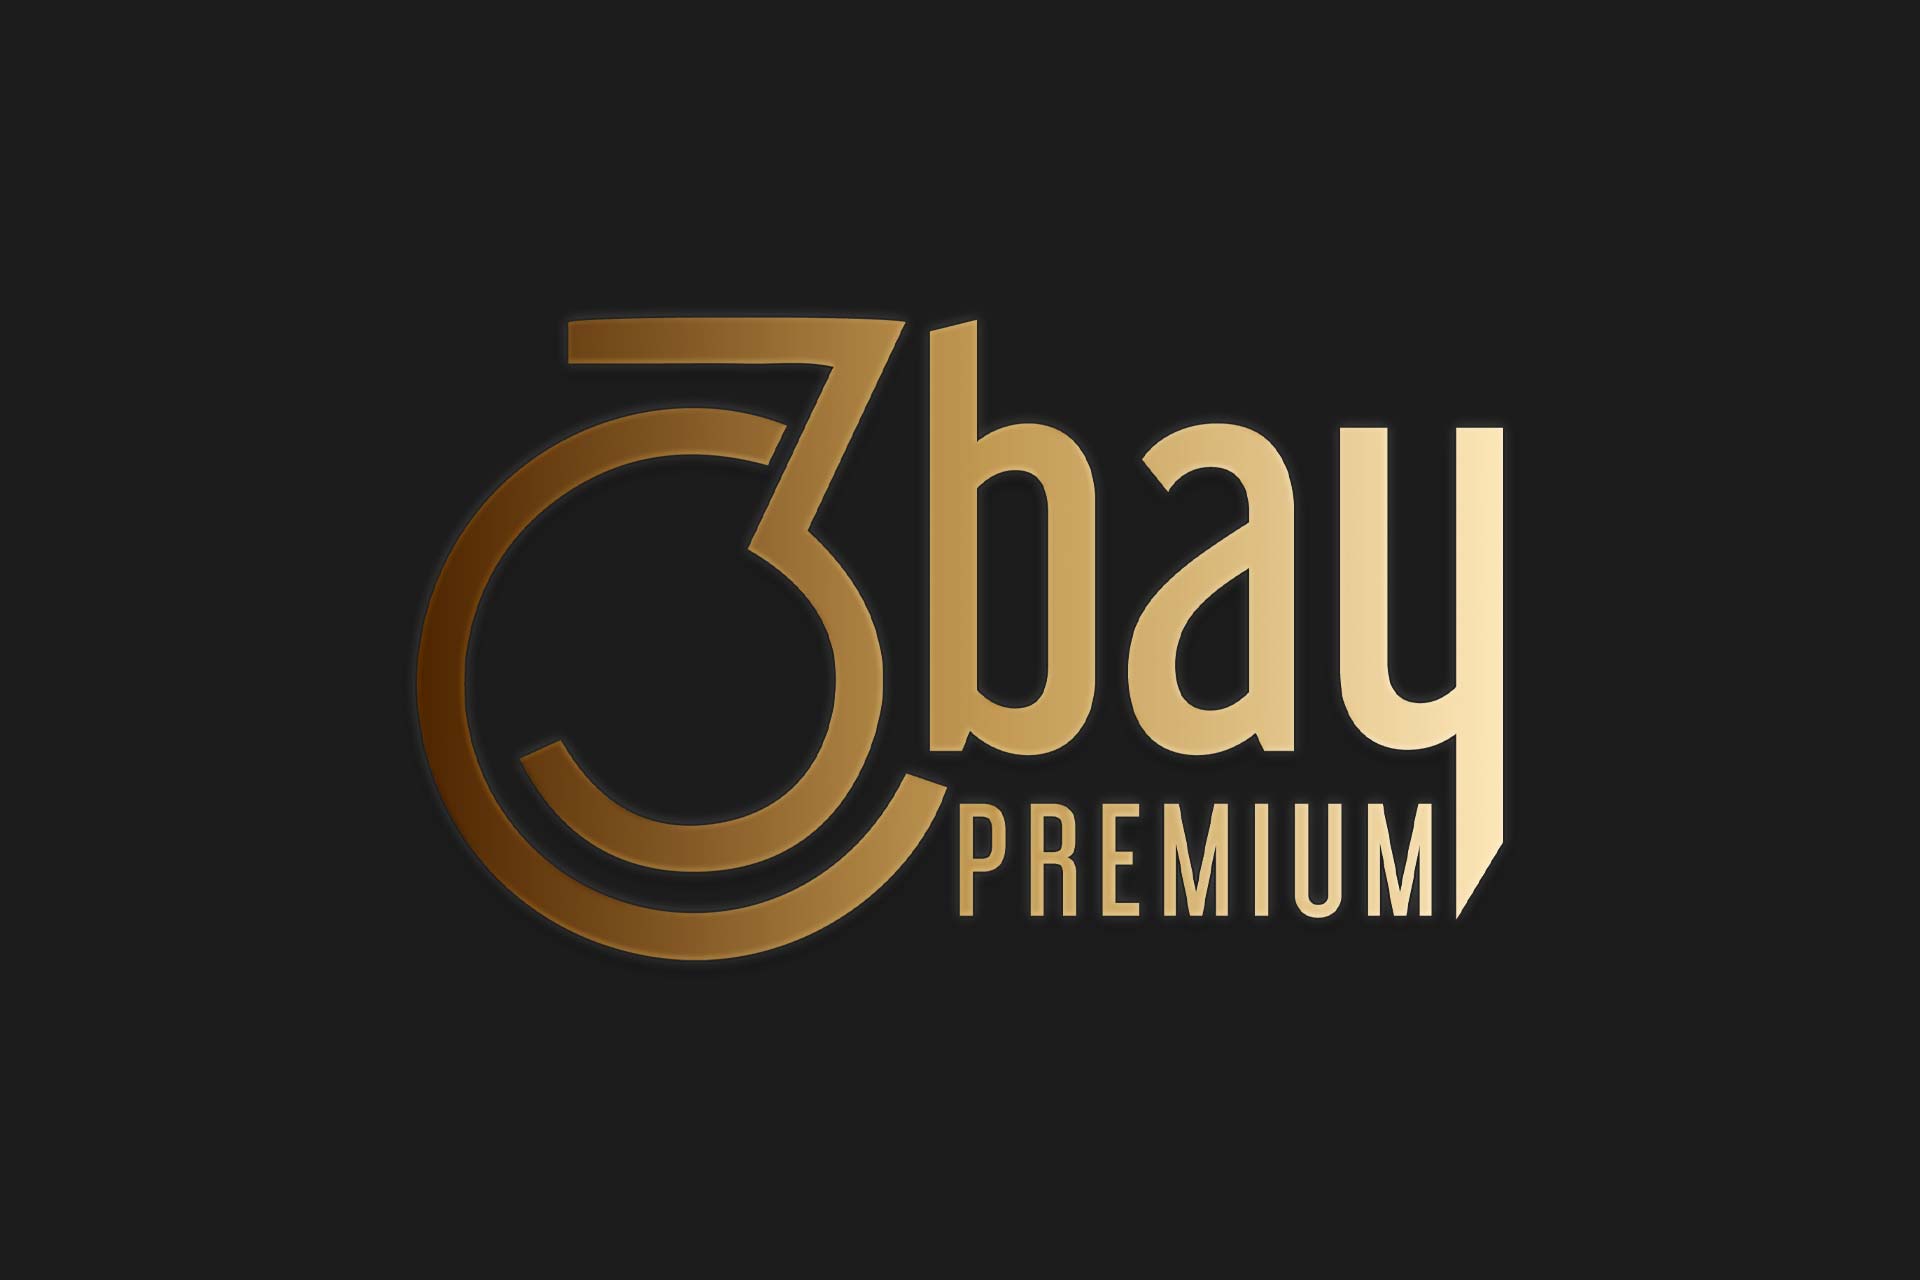 3 Bay Premium